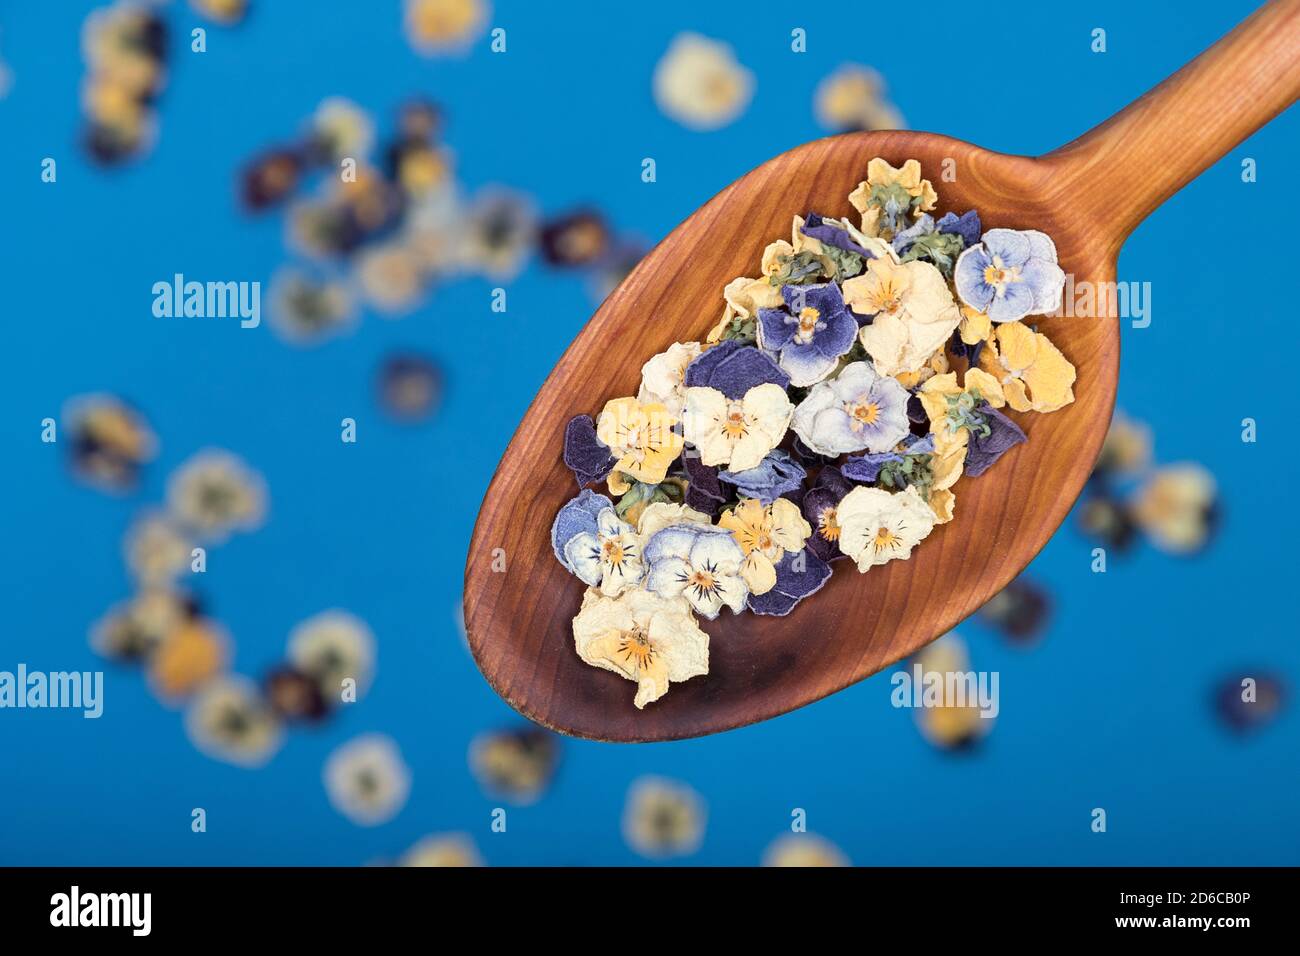 Vue de dessus d'une cuillère en bois avec des fleurs comestibles sur fond bleu. Mise au point sélective Banque D'Images